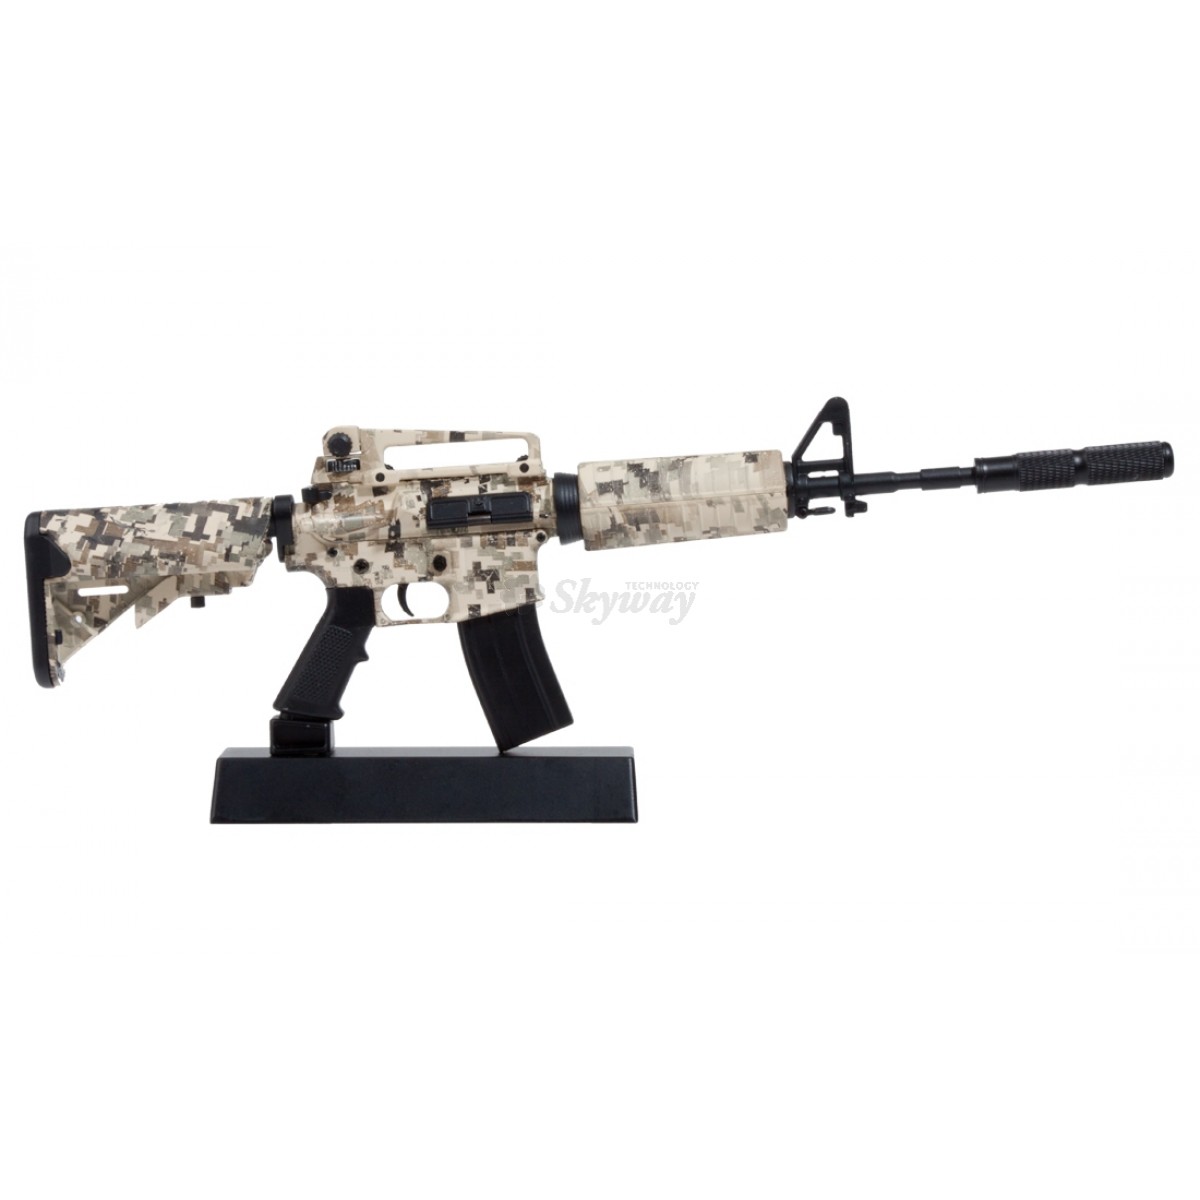 kit n°5 Fusil M4 Digital Camo Ghost Modèle réduit darme factice-Maquette décorative en métal avec Support de présentation-A Collectionner 